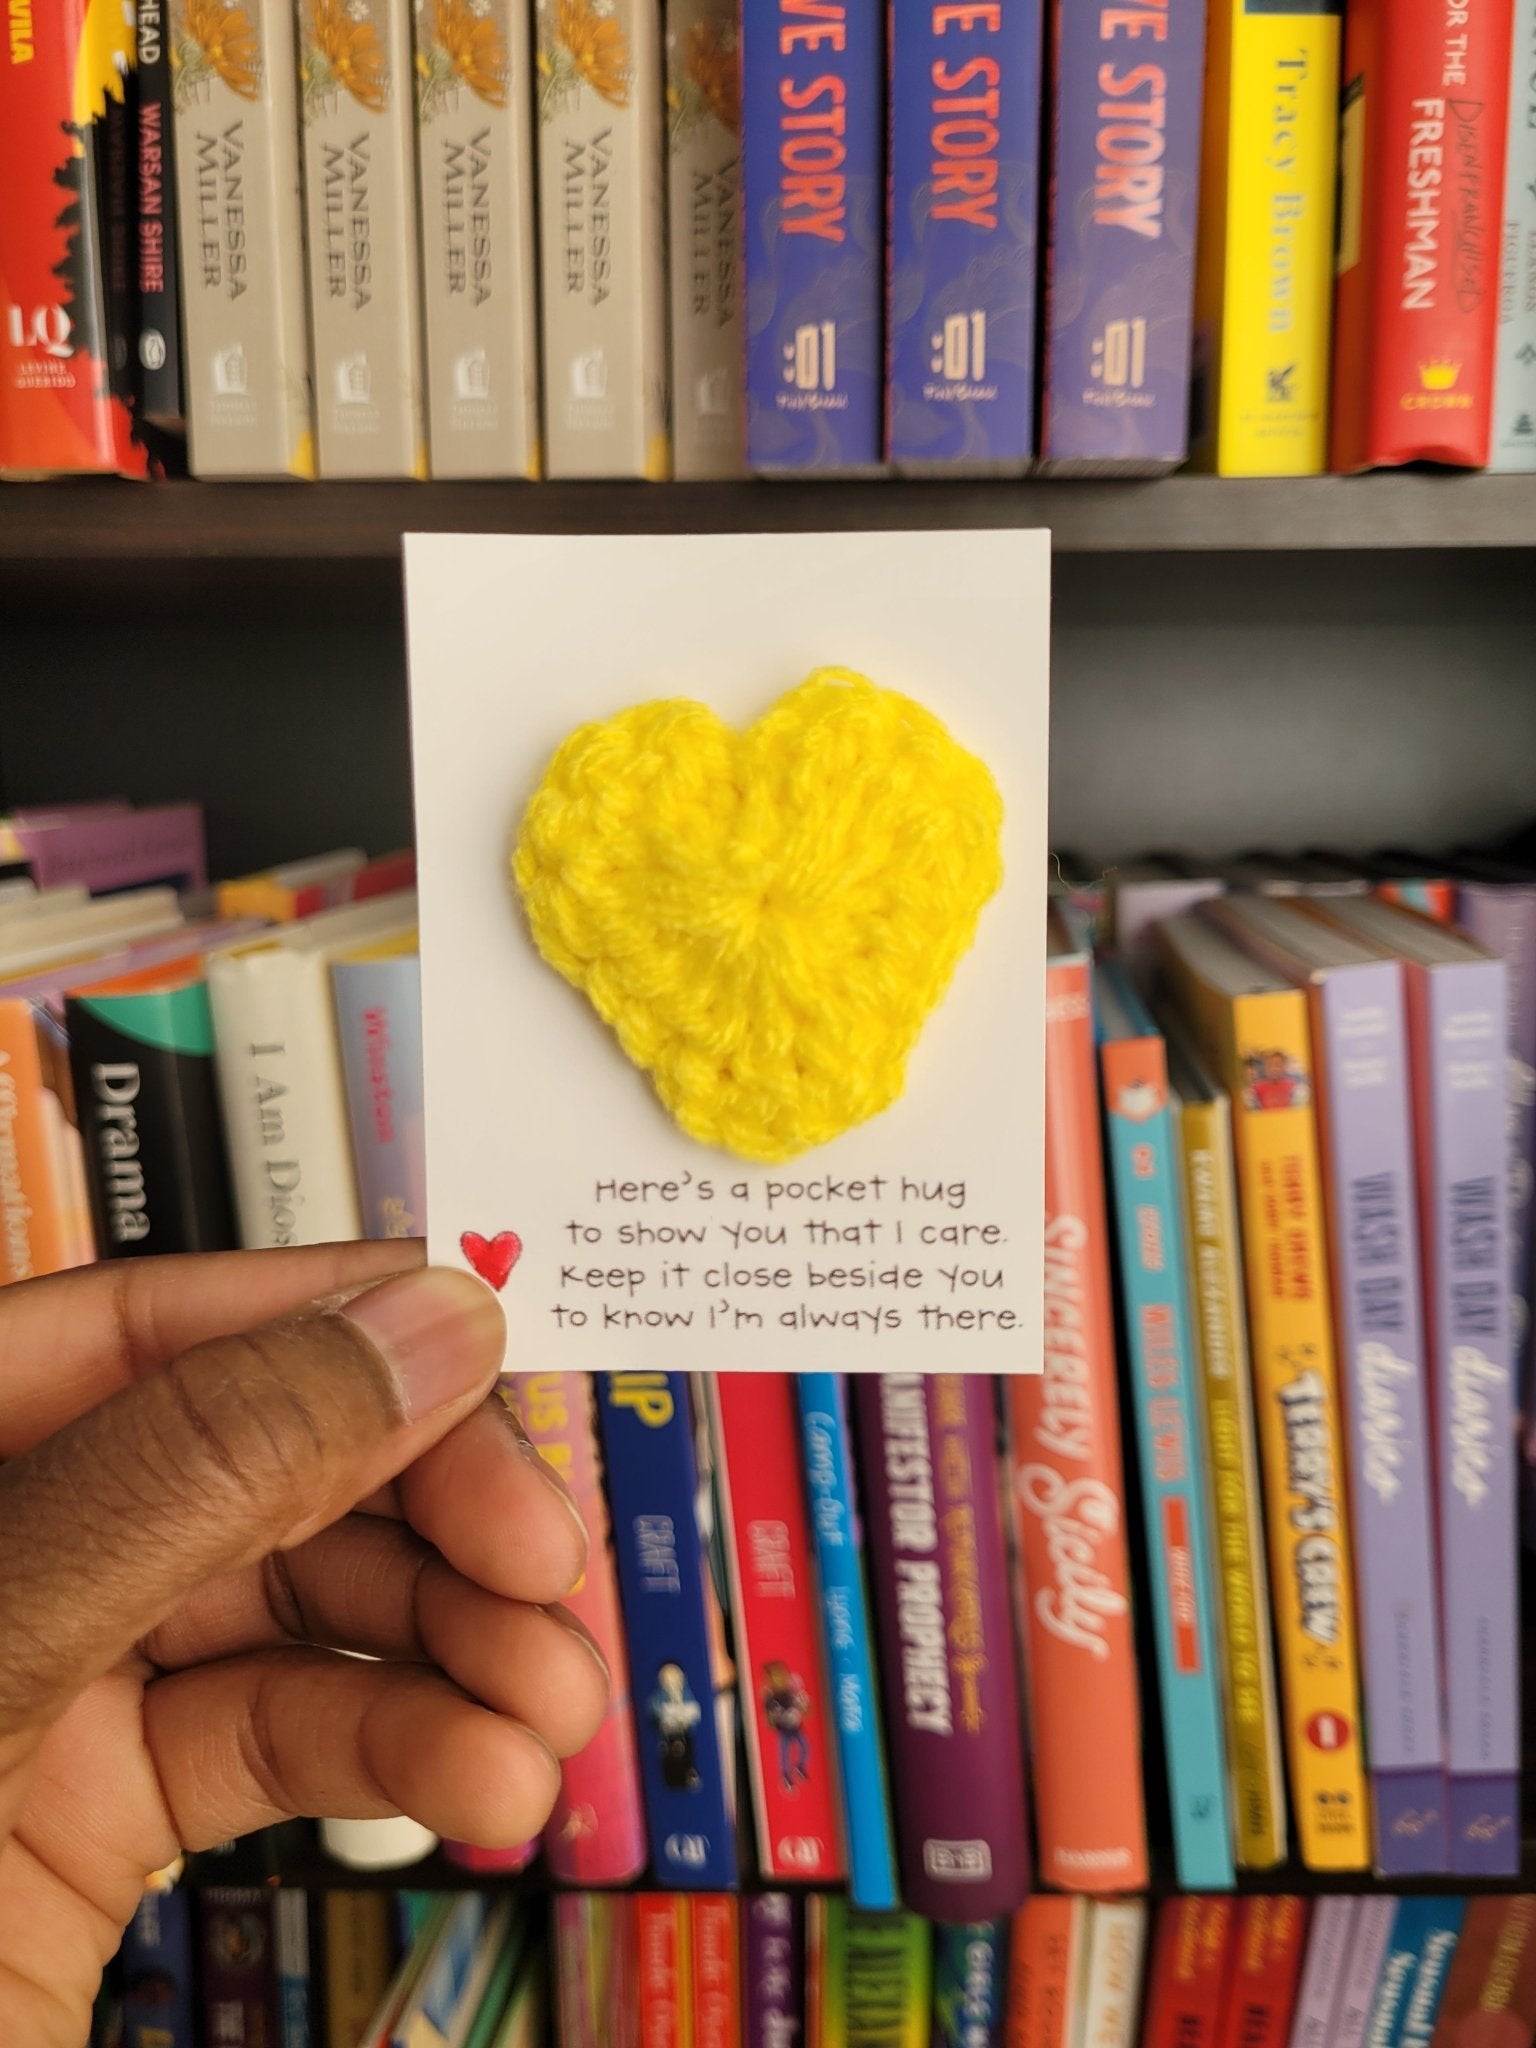 Crochet Pocket Heart - Tuma's Books - Tuma's Books